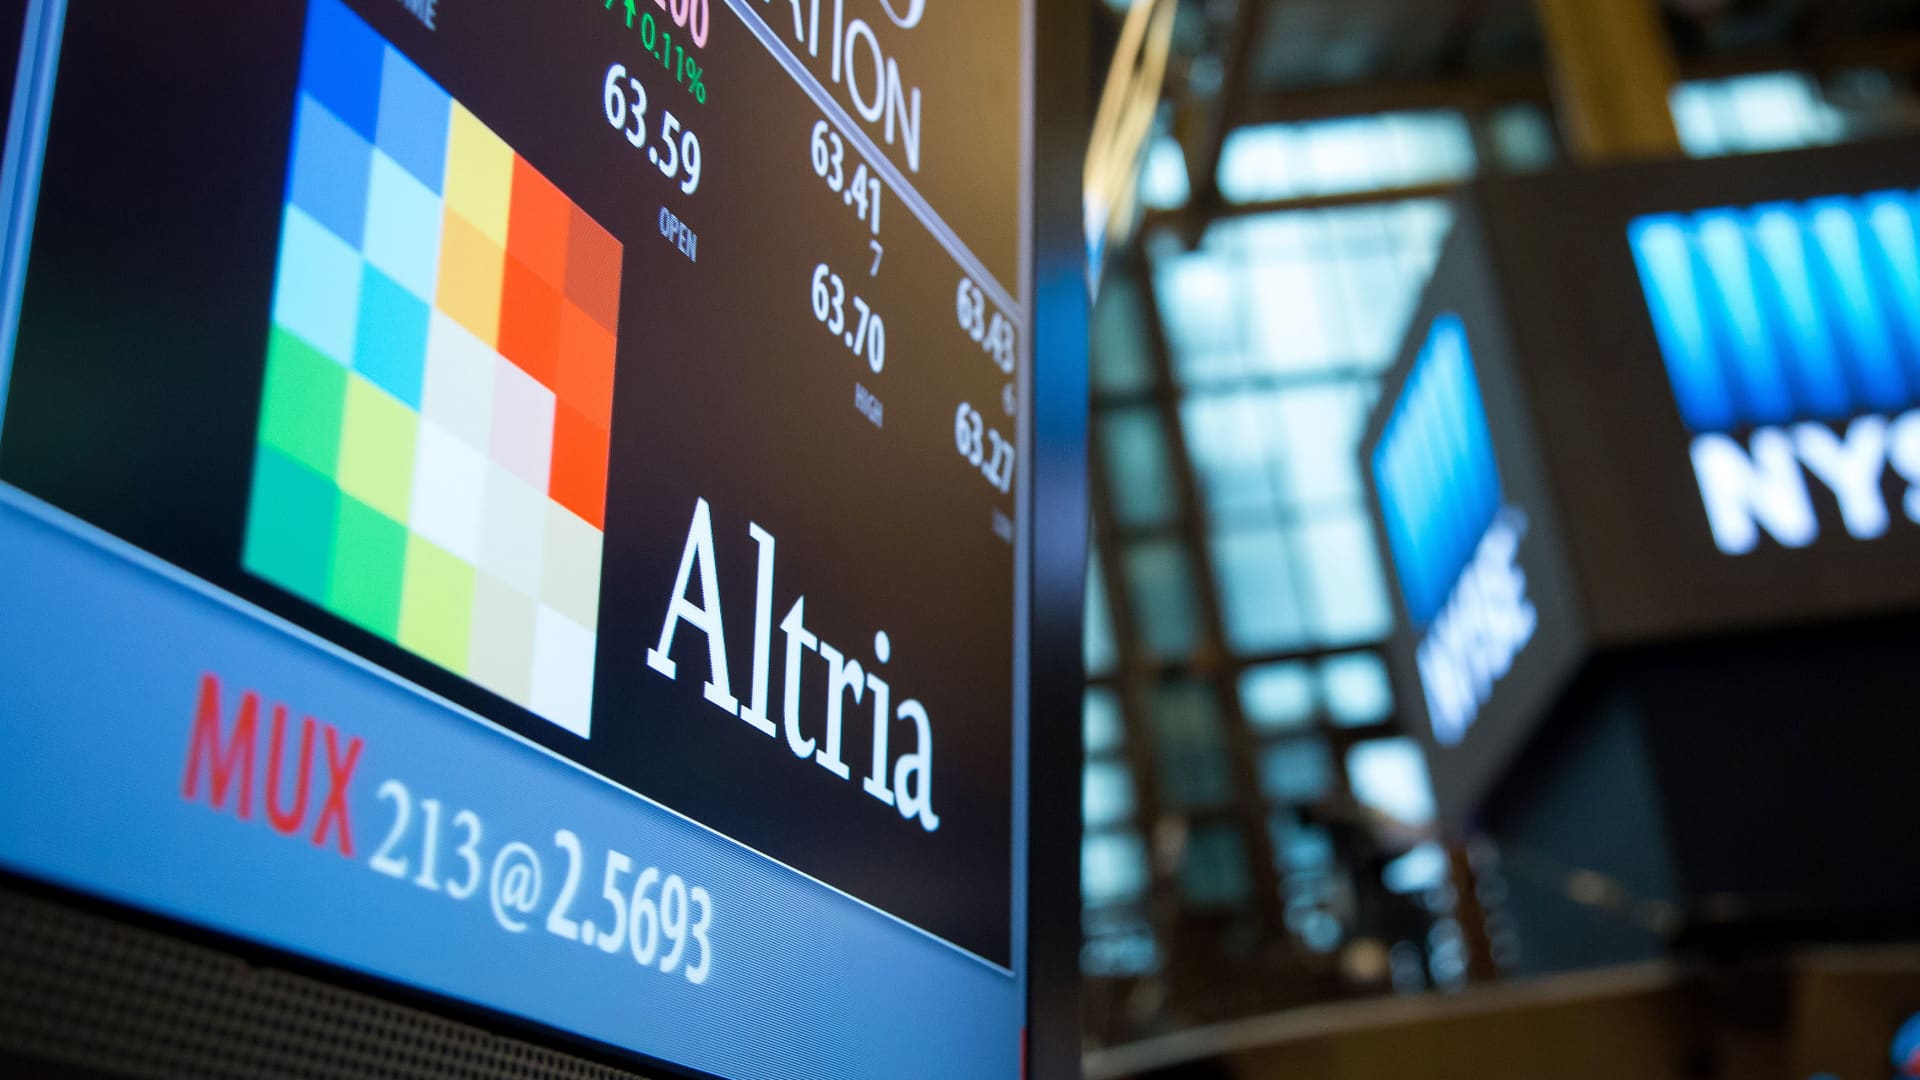 Altria (MO) Q3 2022 earnings